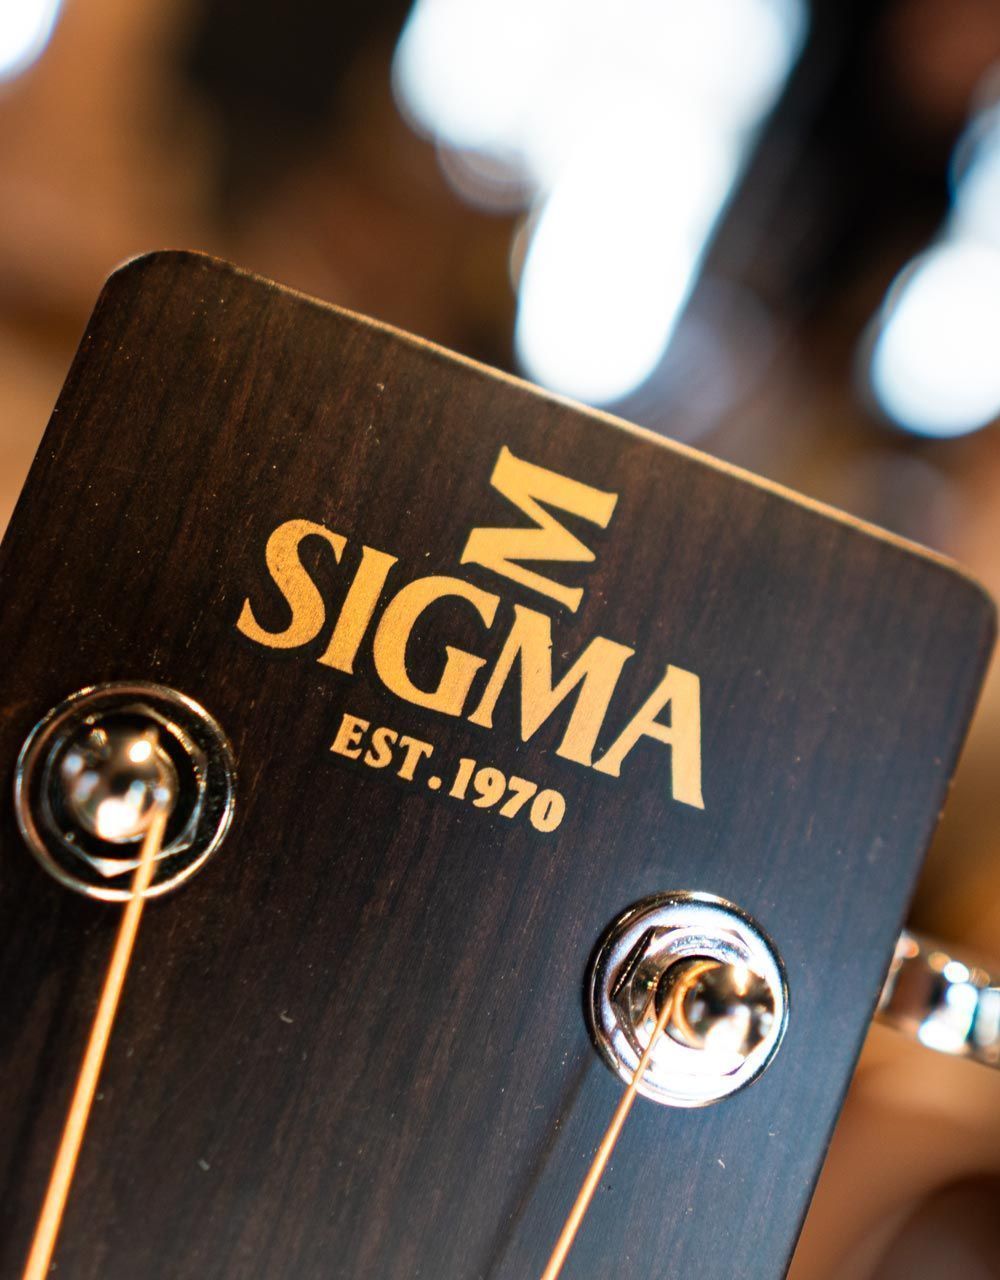 Акустическая гитара Sigma 00M-15 - купить в "Гитарном Клубе"